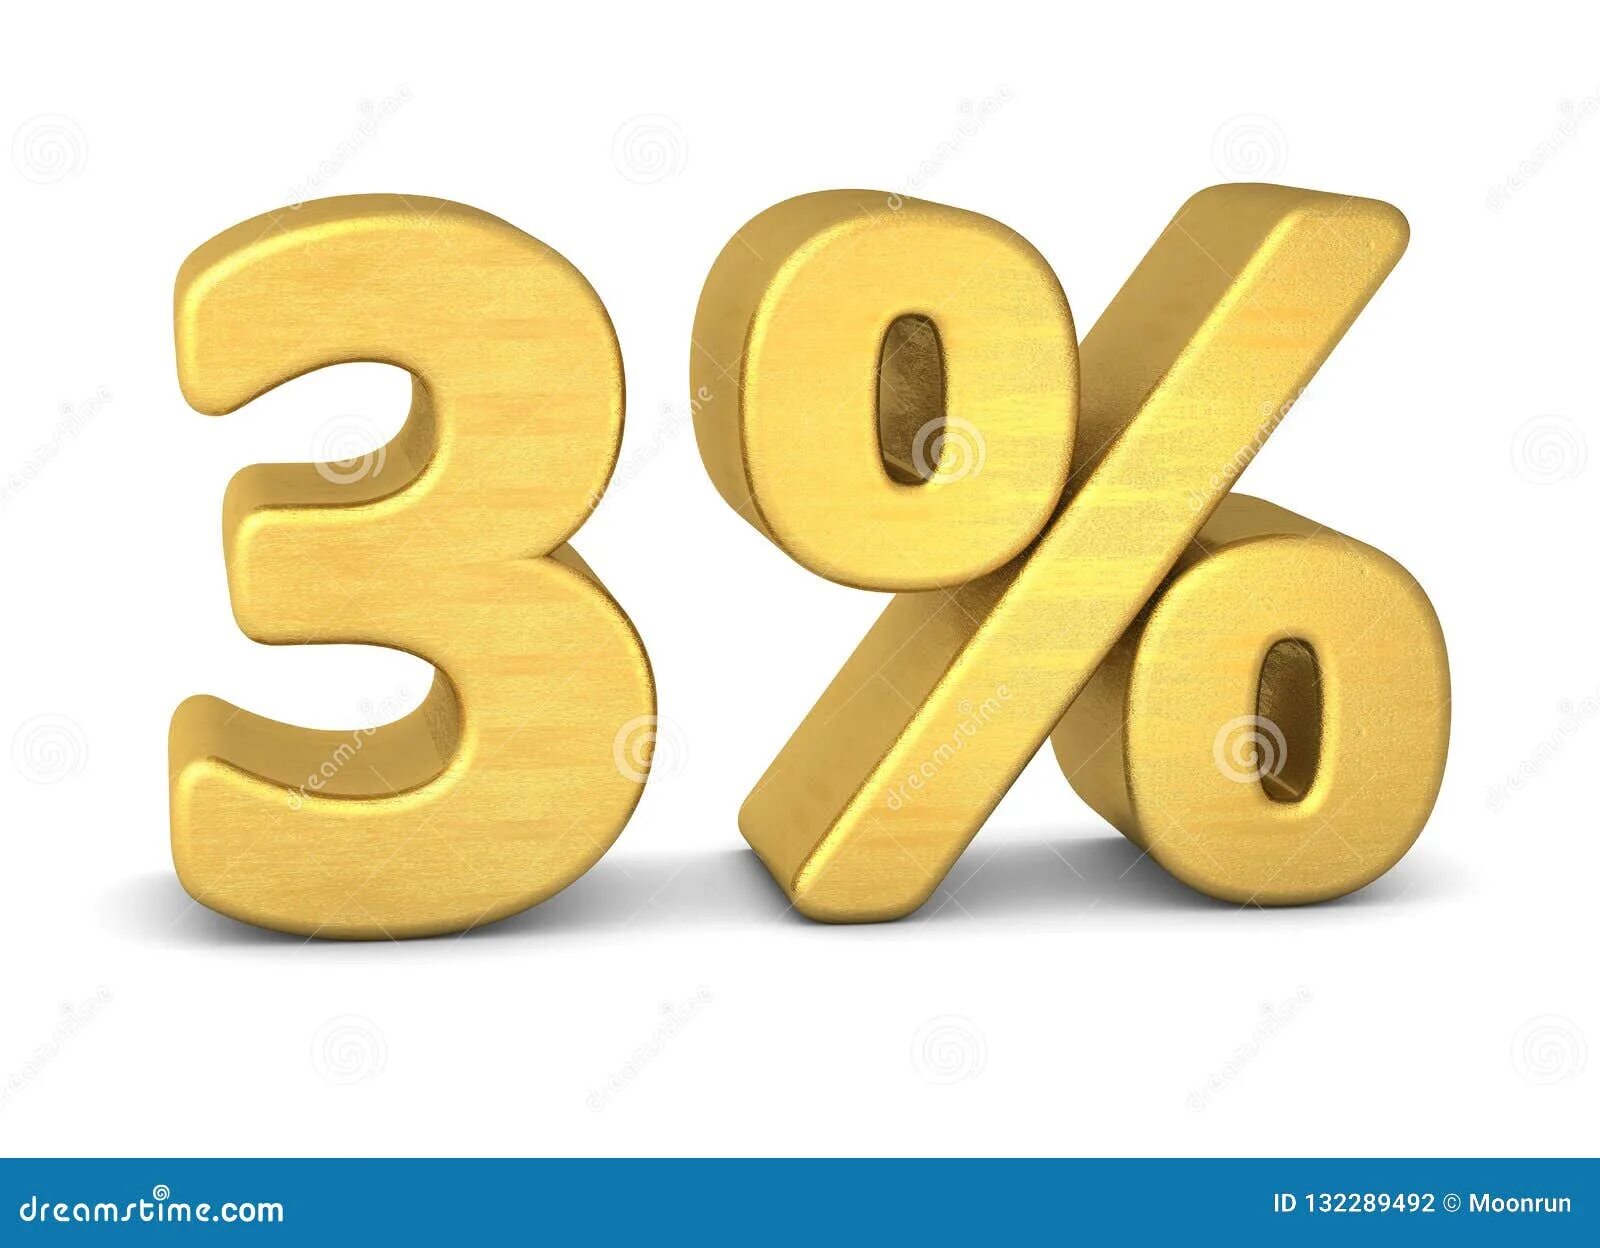 3 процент 2019. 3 Процента. Знак процента Gold. Объемные проценты. 3 Процента фото.